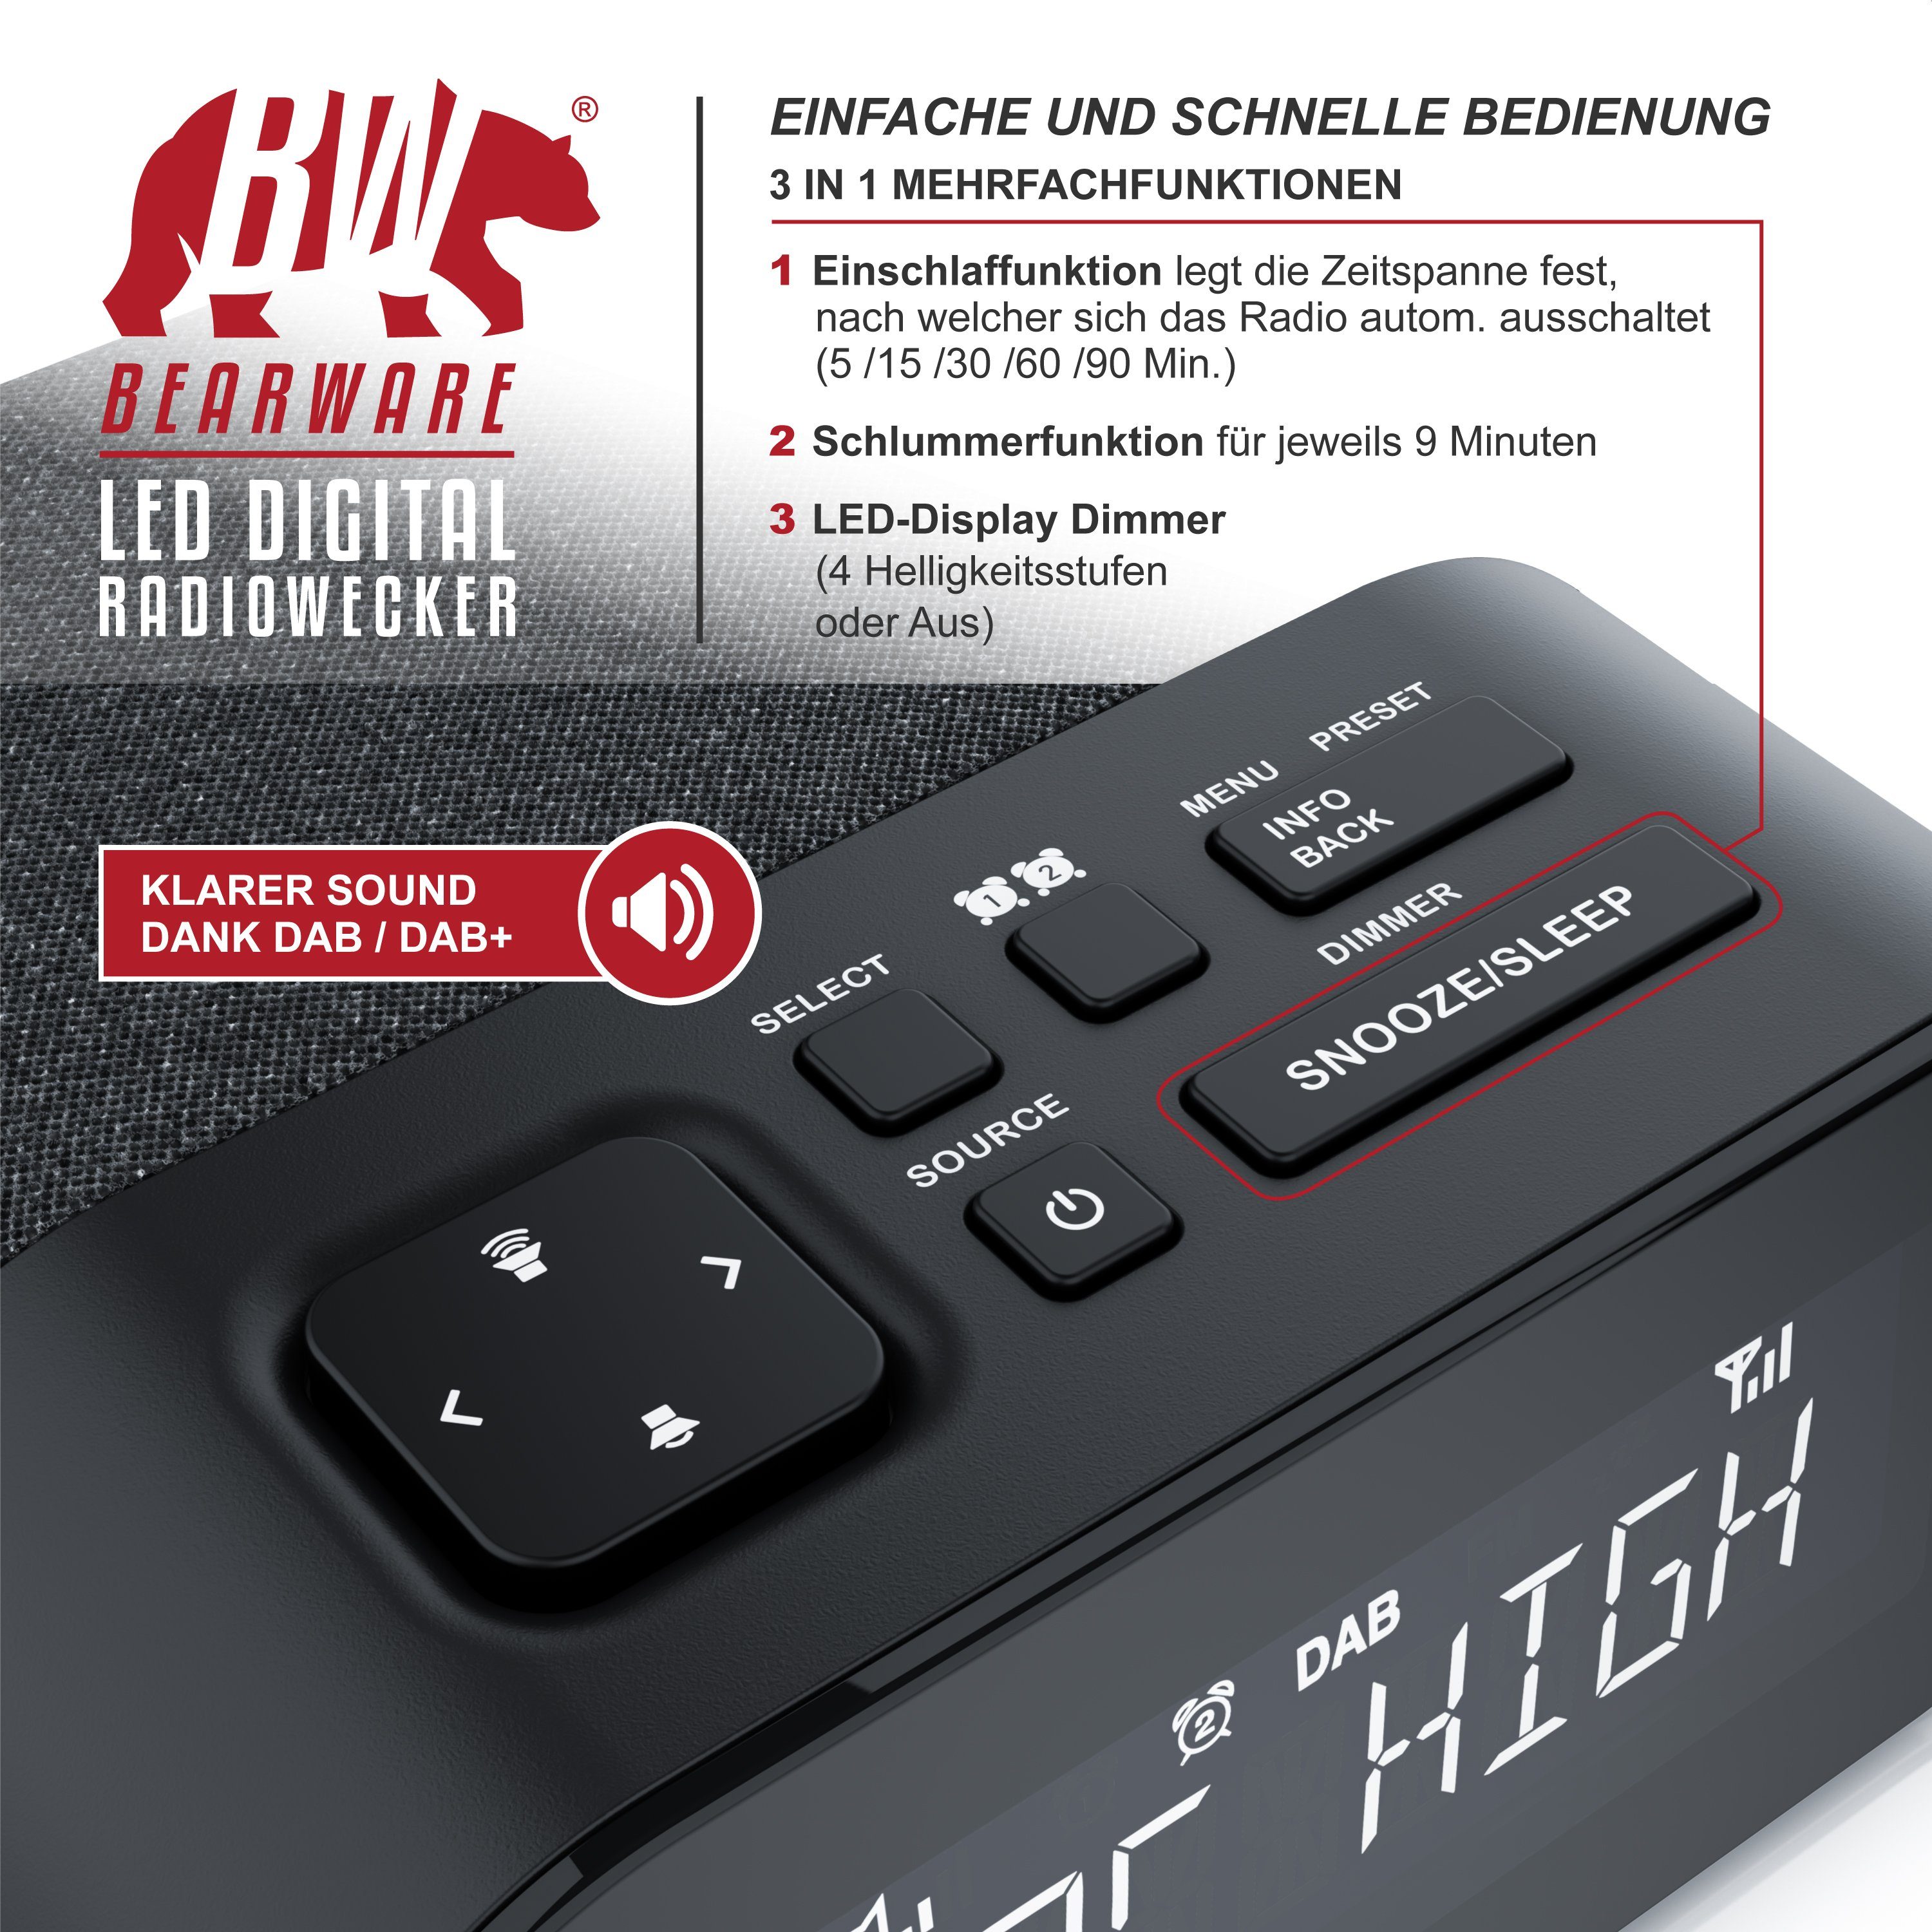 BEARWARE Radiowecker Küchenradio digital, FM 4 & + Wecker, Radio, Helligkeitsstufen DAB